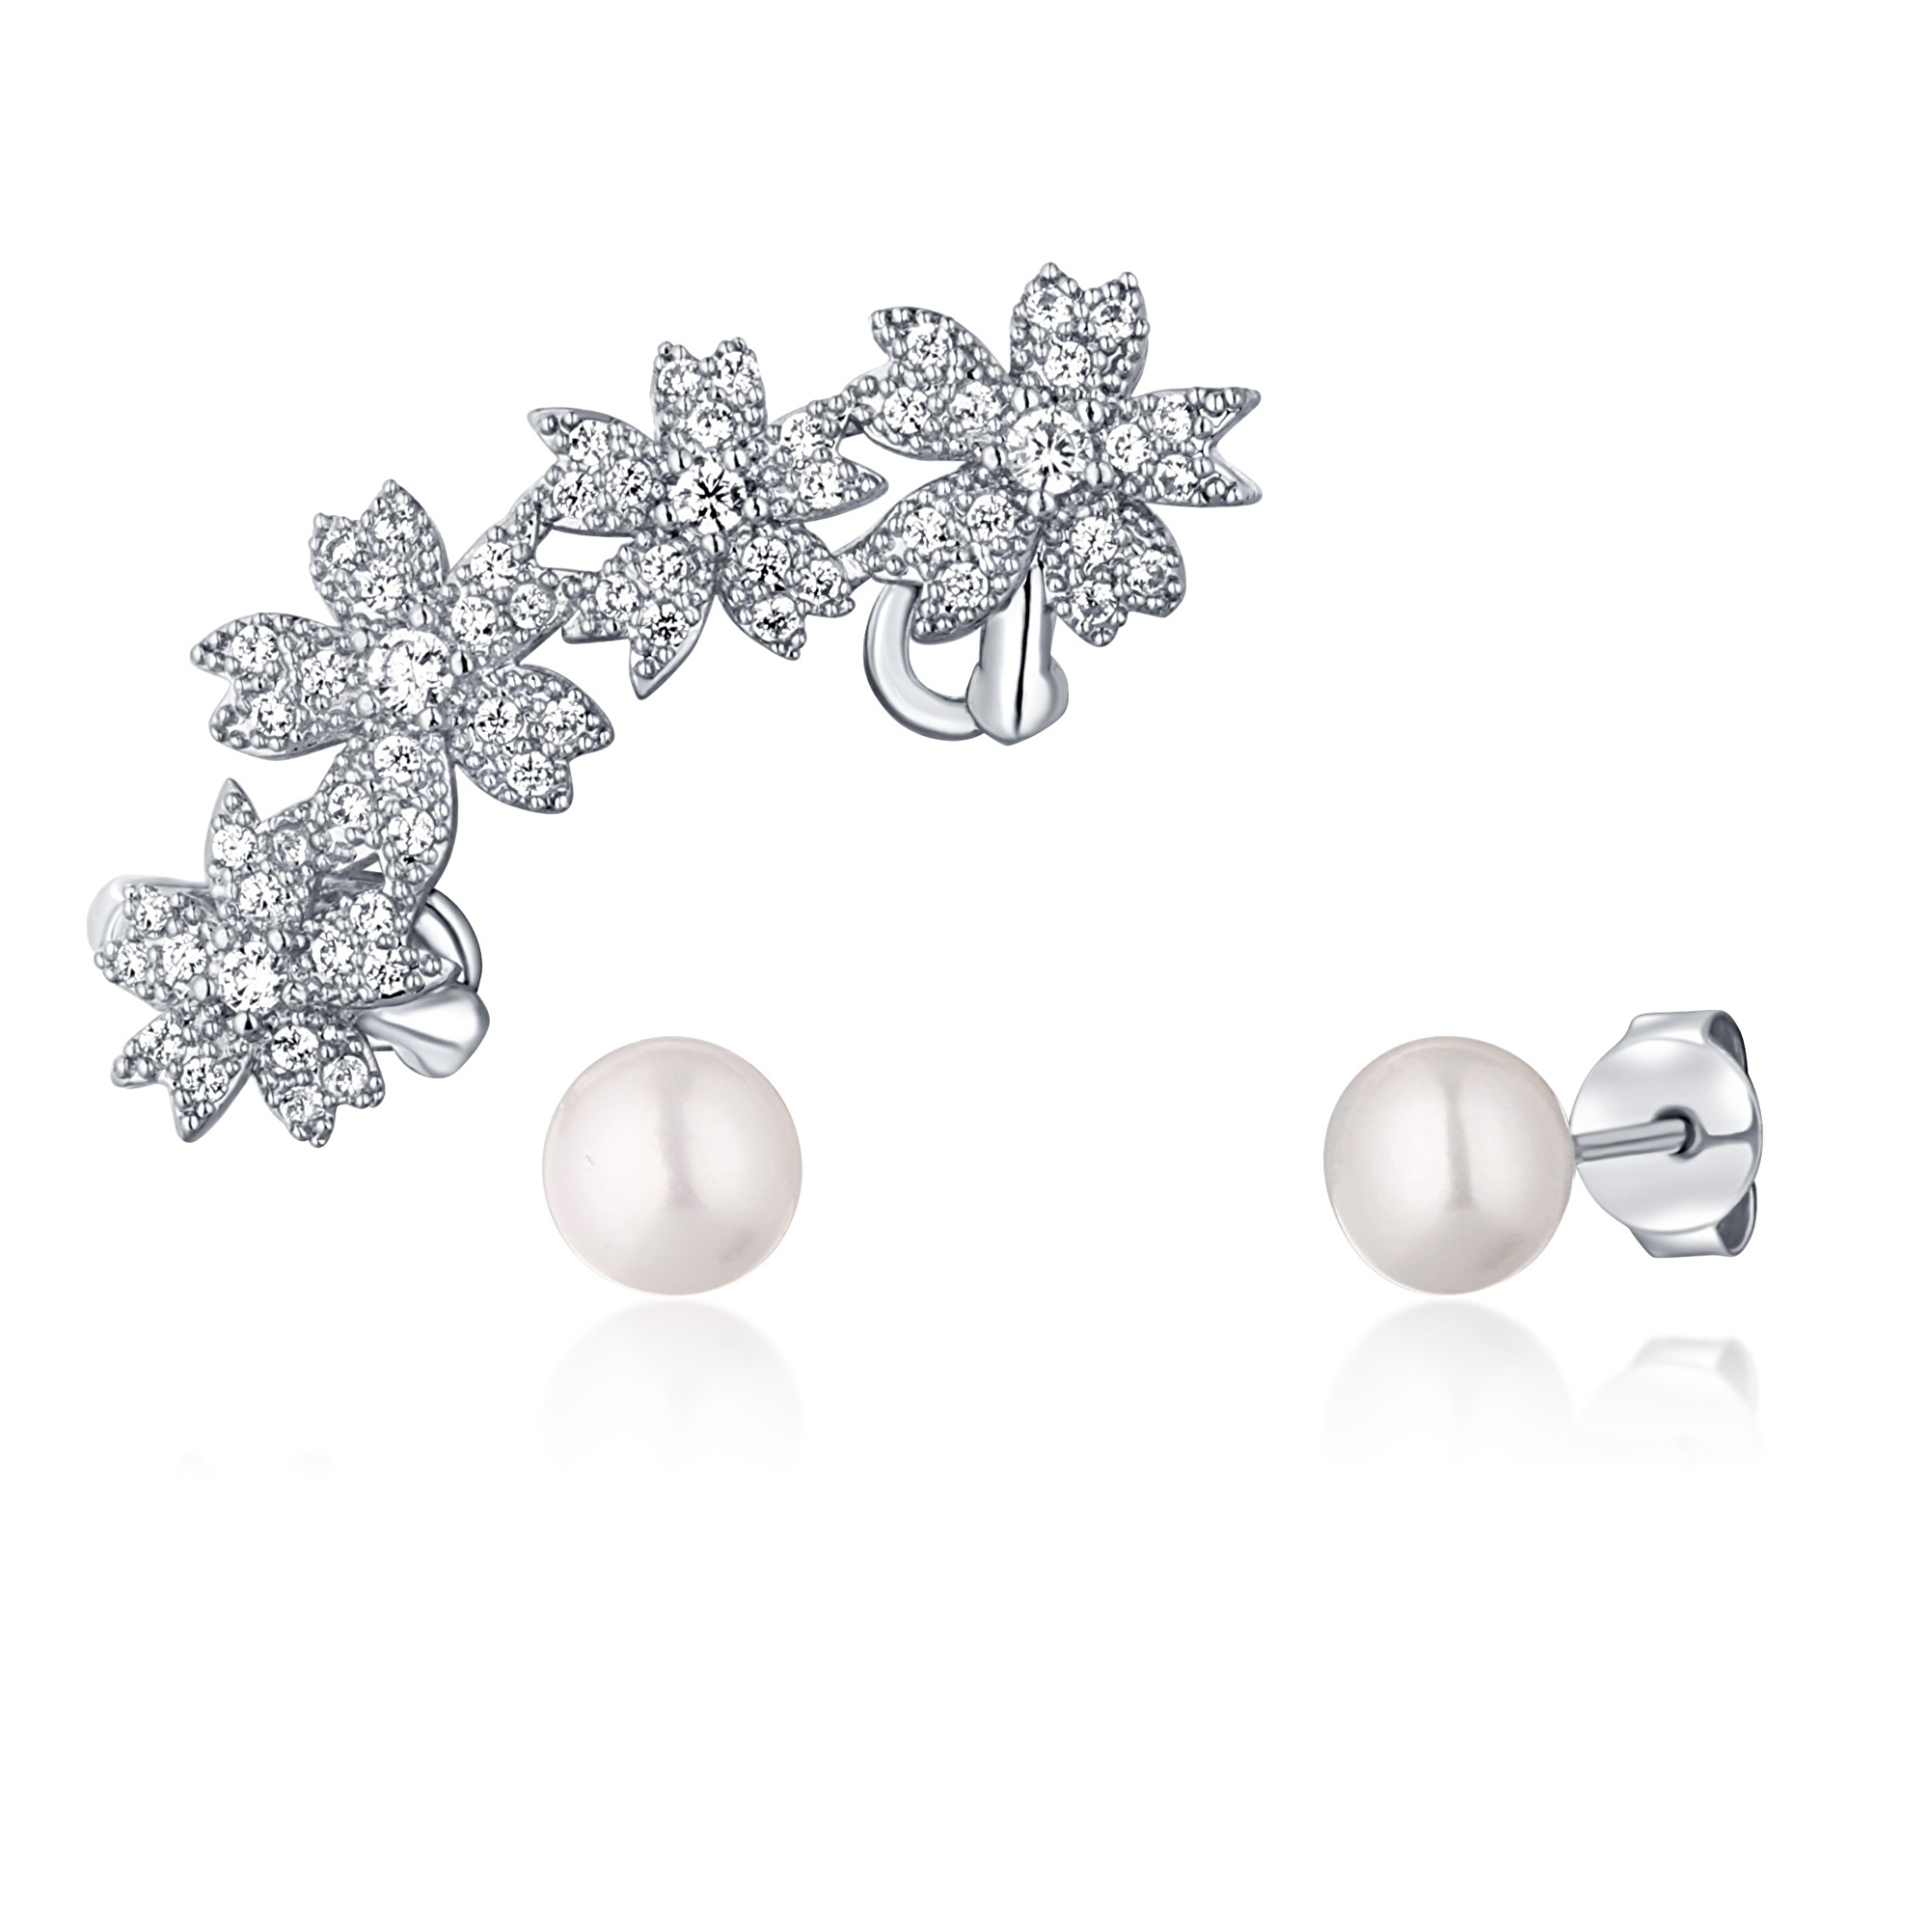 JwL Luxury Pearls Nádherný set perlových náušnic (1x záušnice, 2x pecková náušnice) JL0781